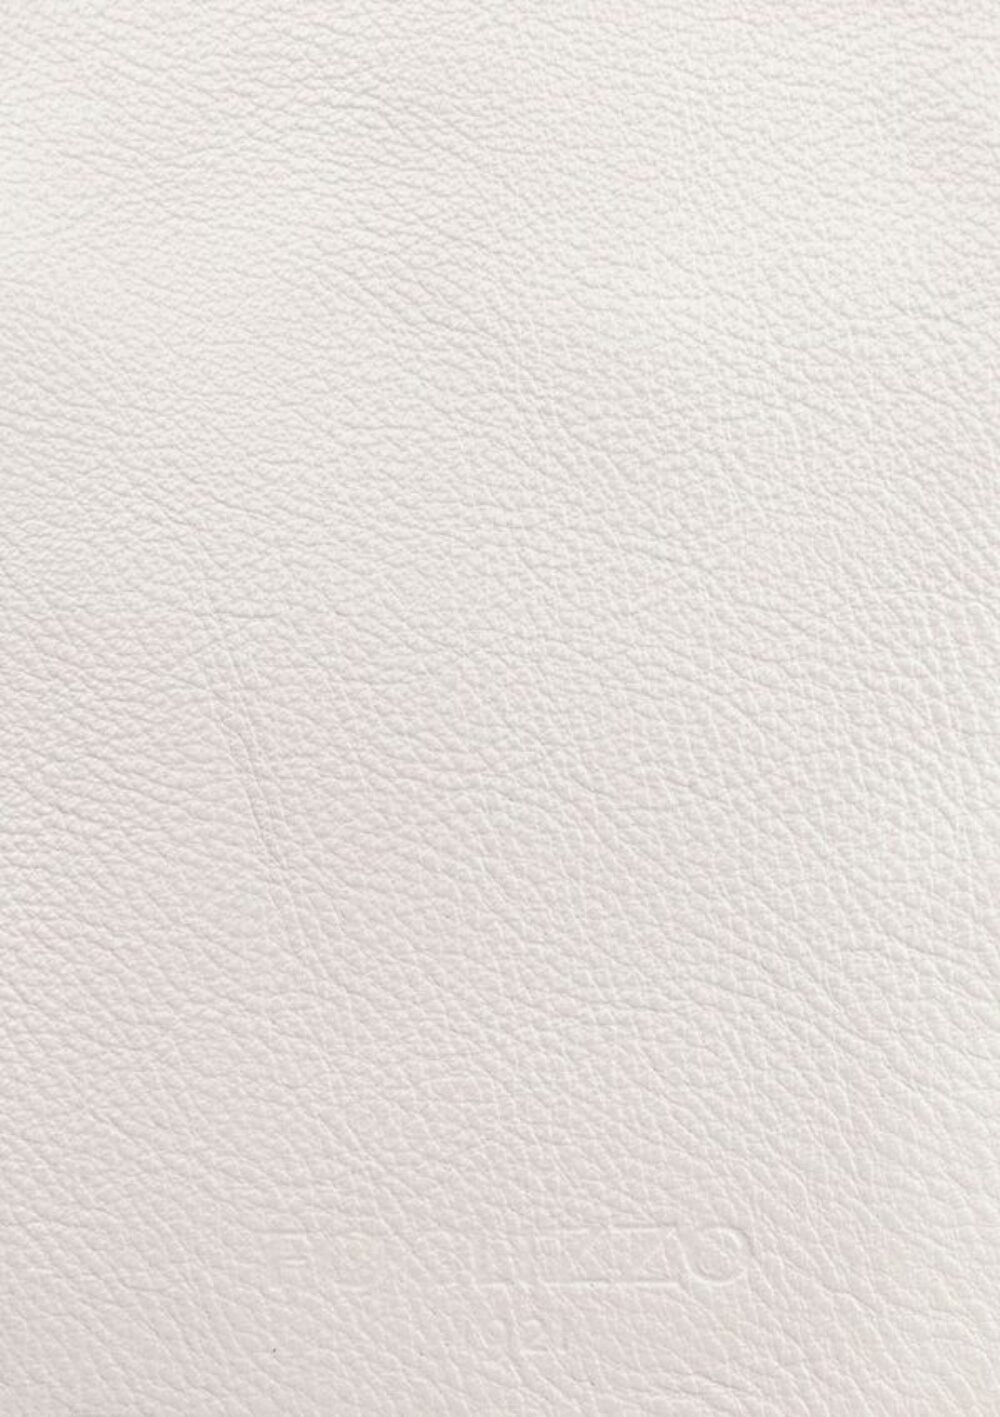 Diseño de lujo y alfombras de alta gama hechas a medida • Ultra White Jade